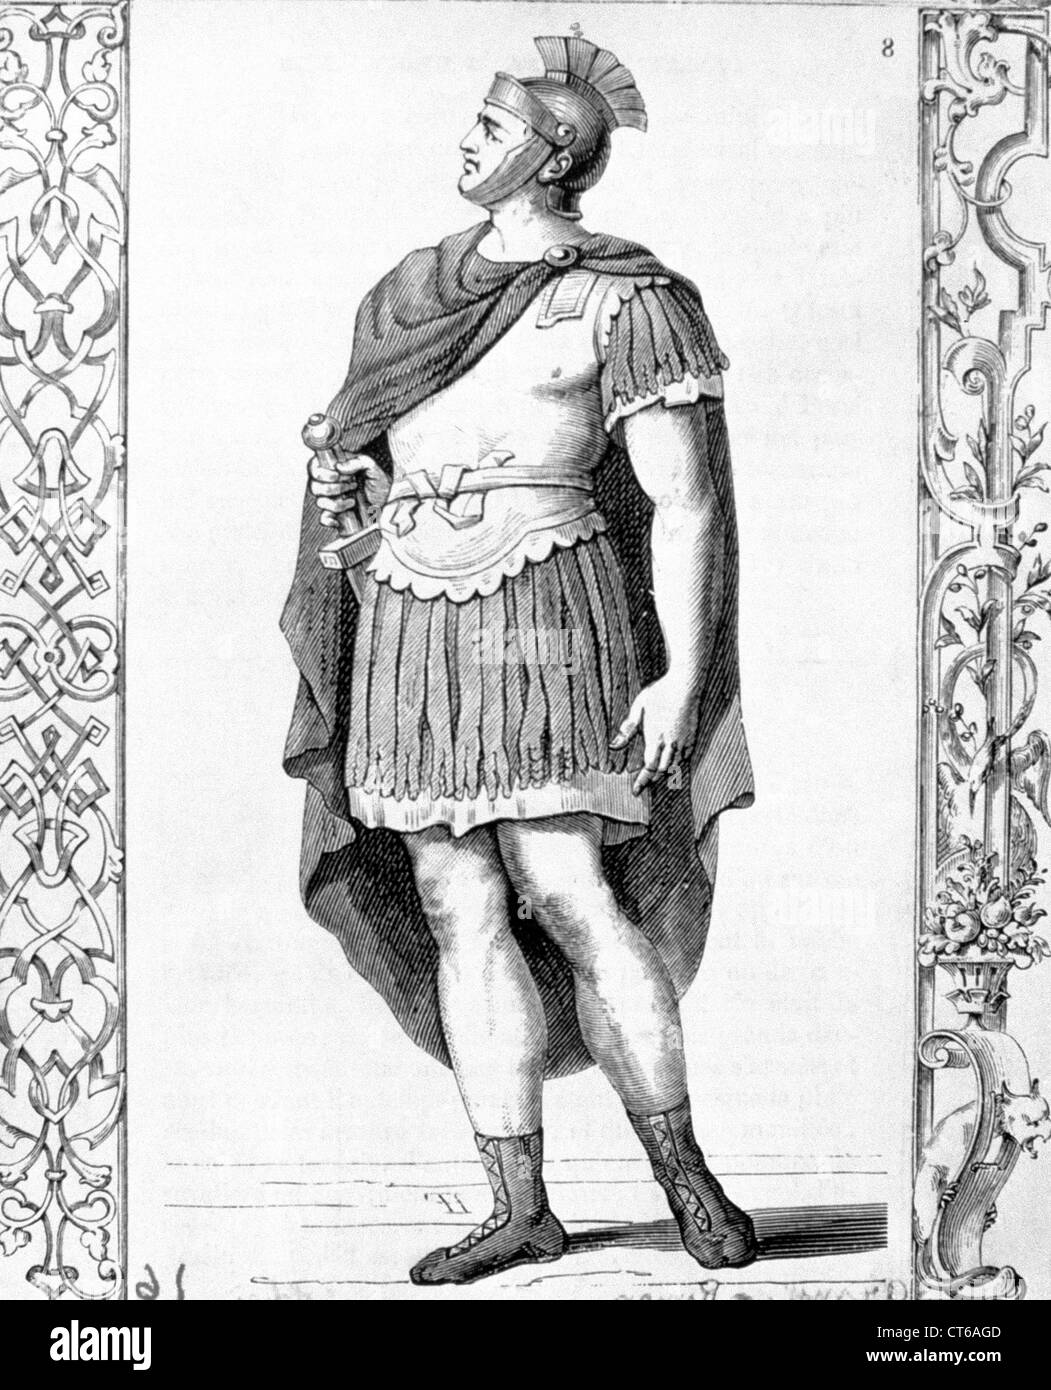 Illustration - Roman soldier Stock Photo